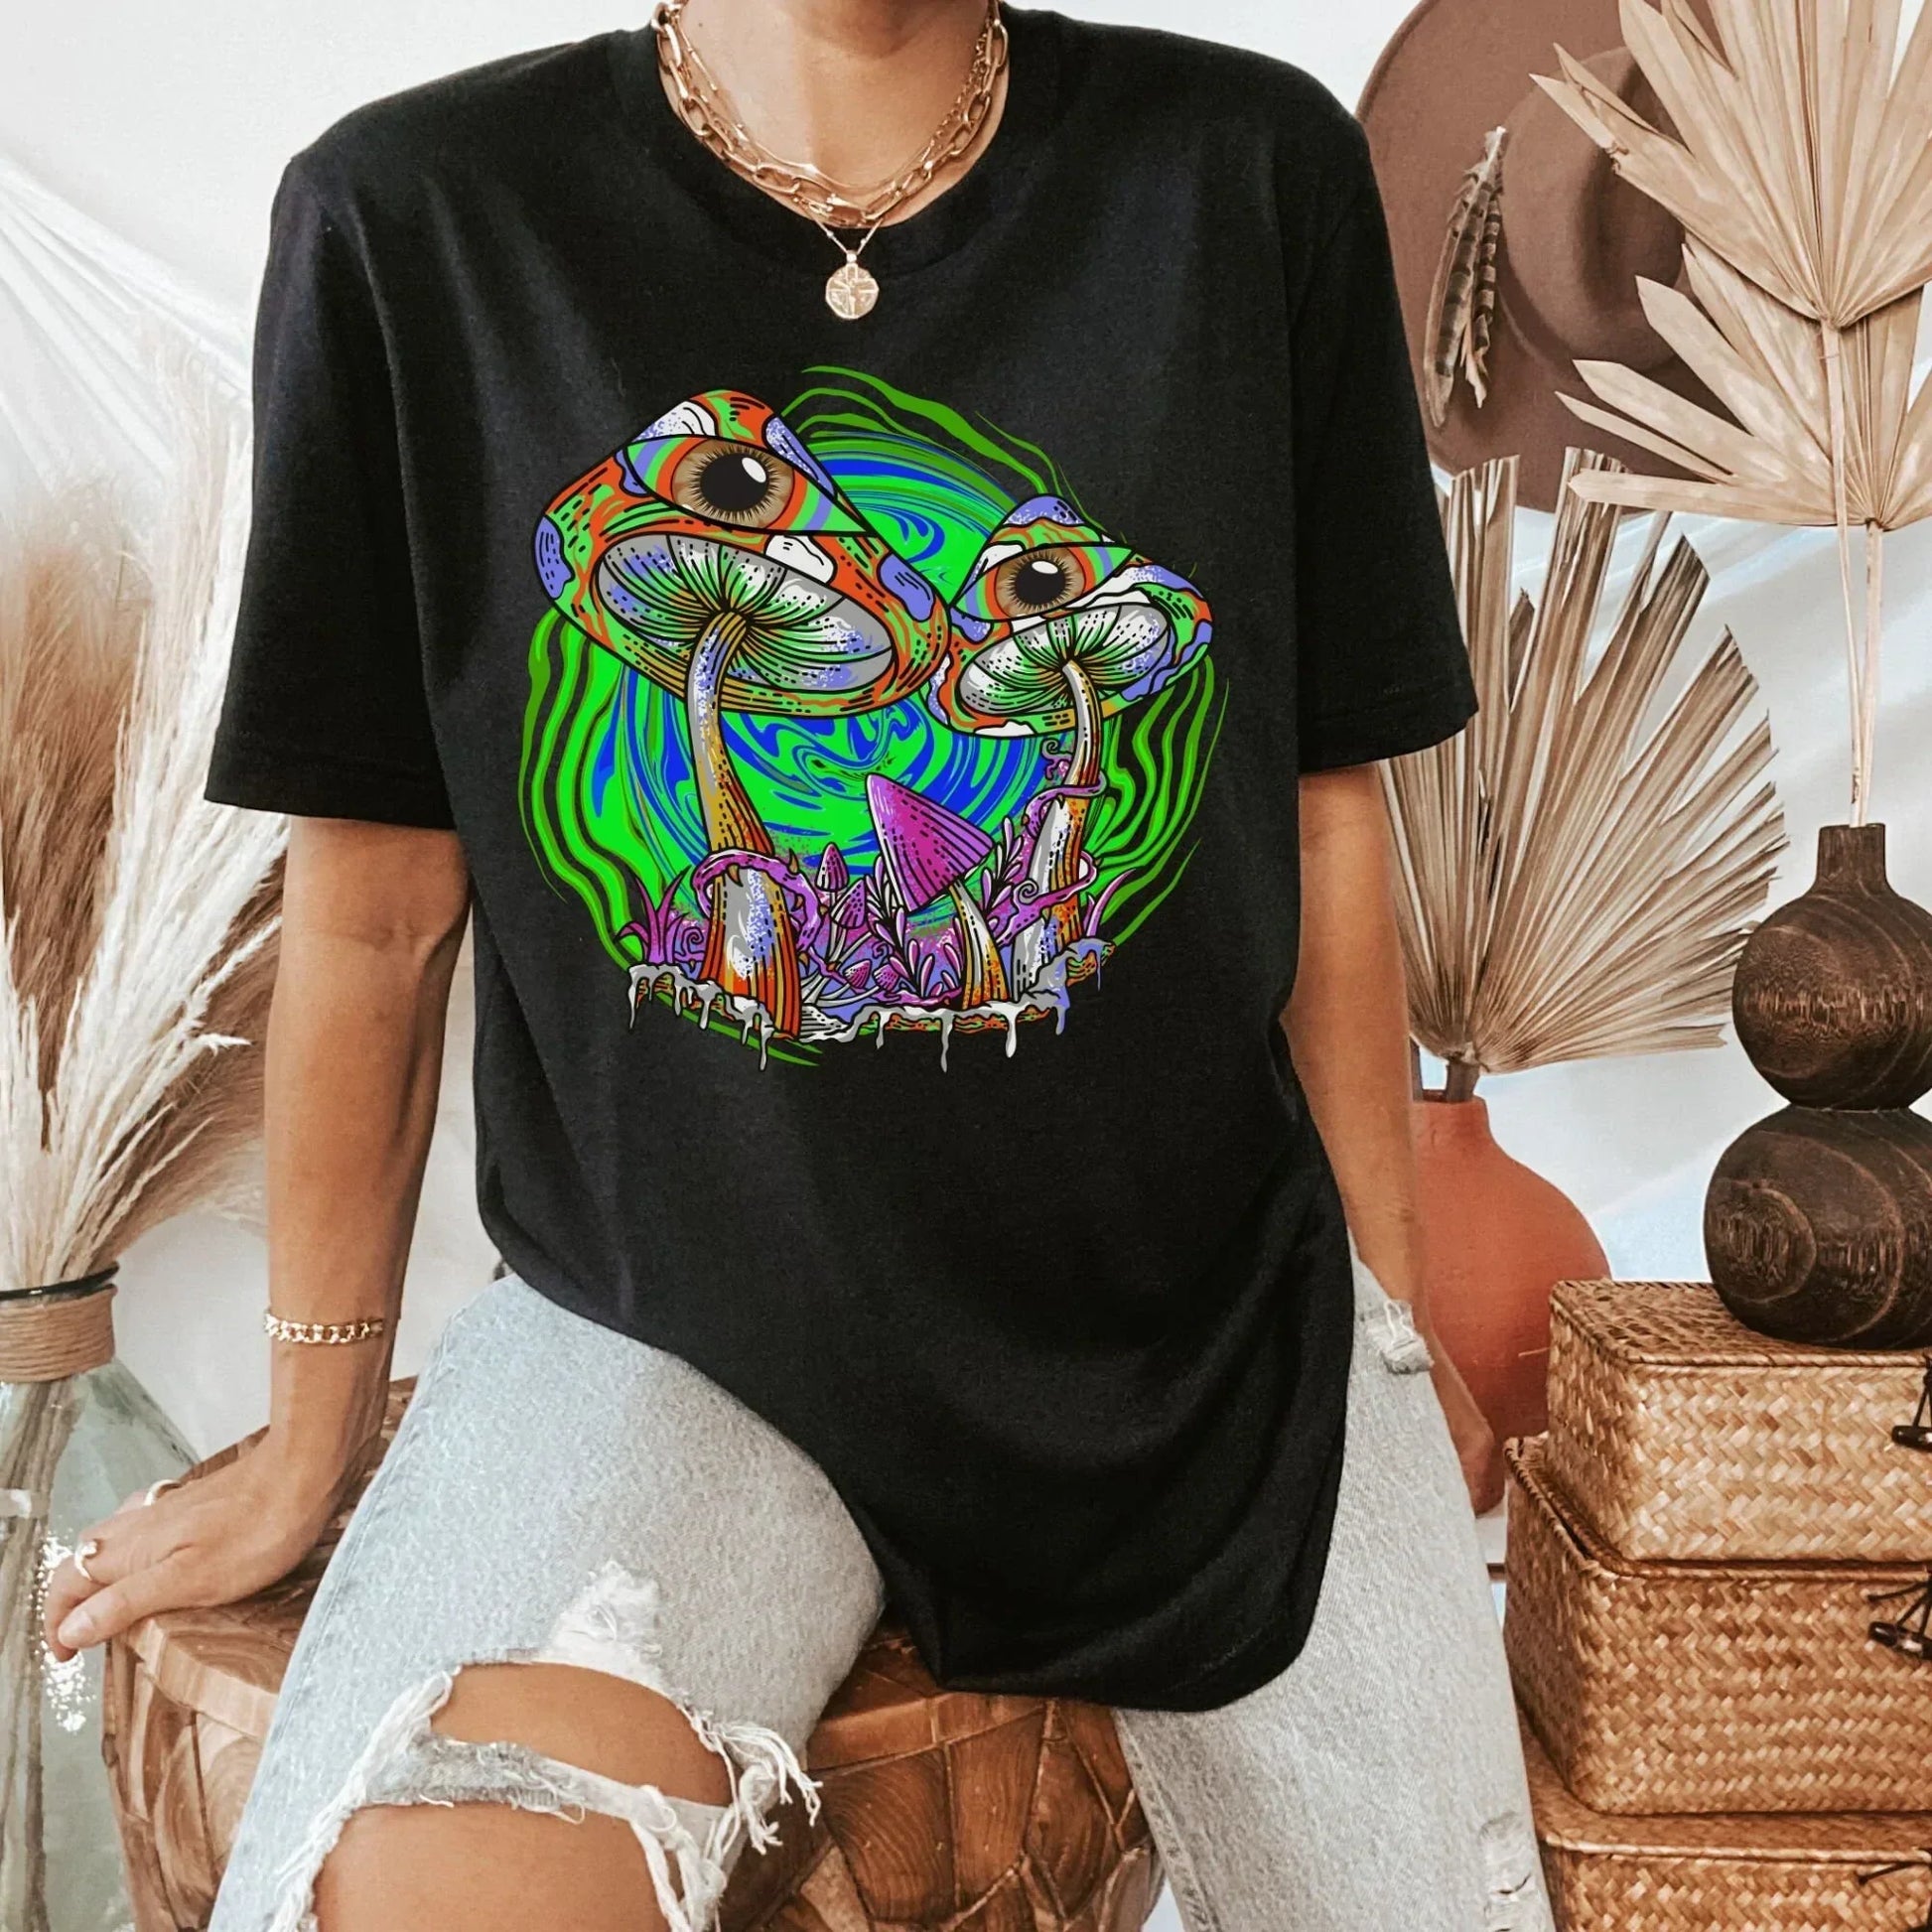 Mushroom Hoodie, Magic Mushroom Sweater, Third Eye Sweatshirt, Celestial Shirt, Goblincore Clothing, Pastel Goth Hoodie, Herbology Alien Tee